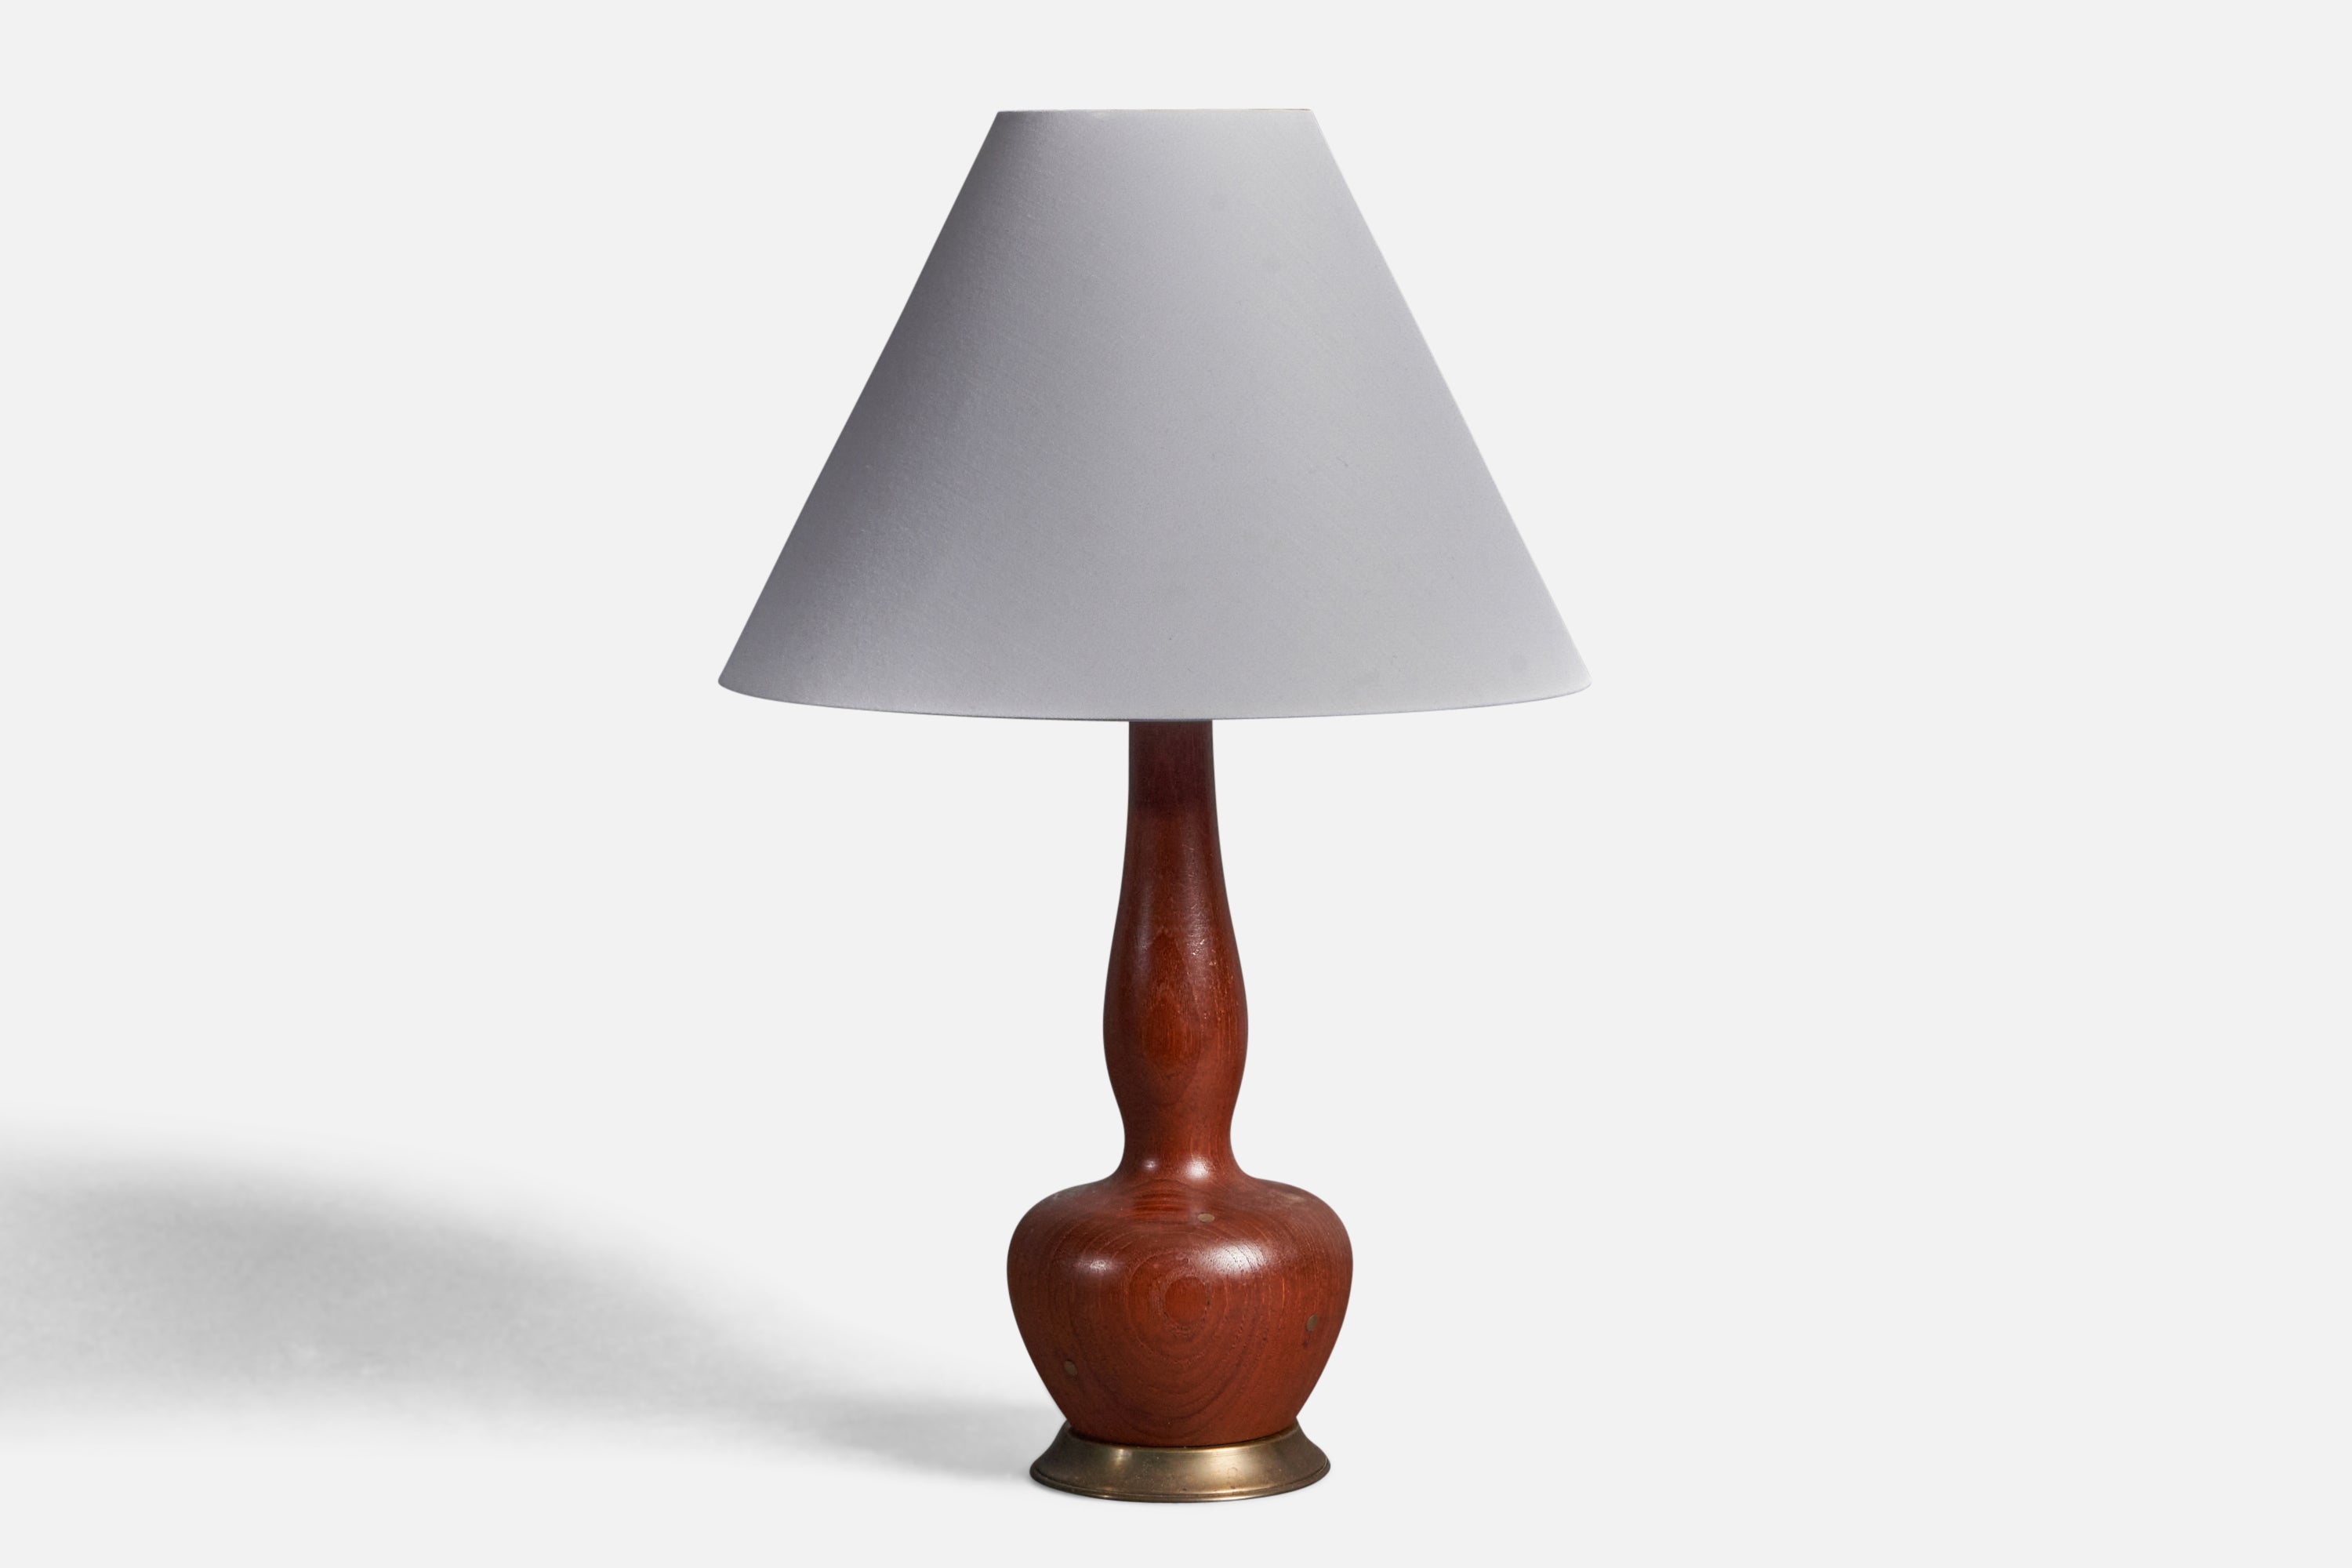 Danish Modernist Designer, Organic Table Lamp, Teak, Brass Inlays, Denmark 1950s For Sale